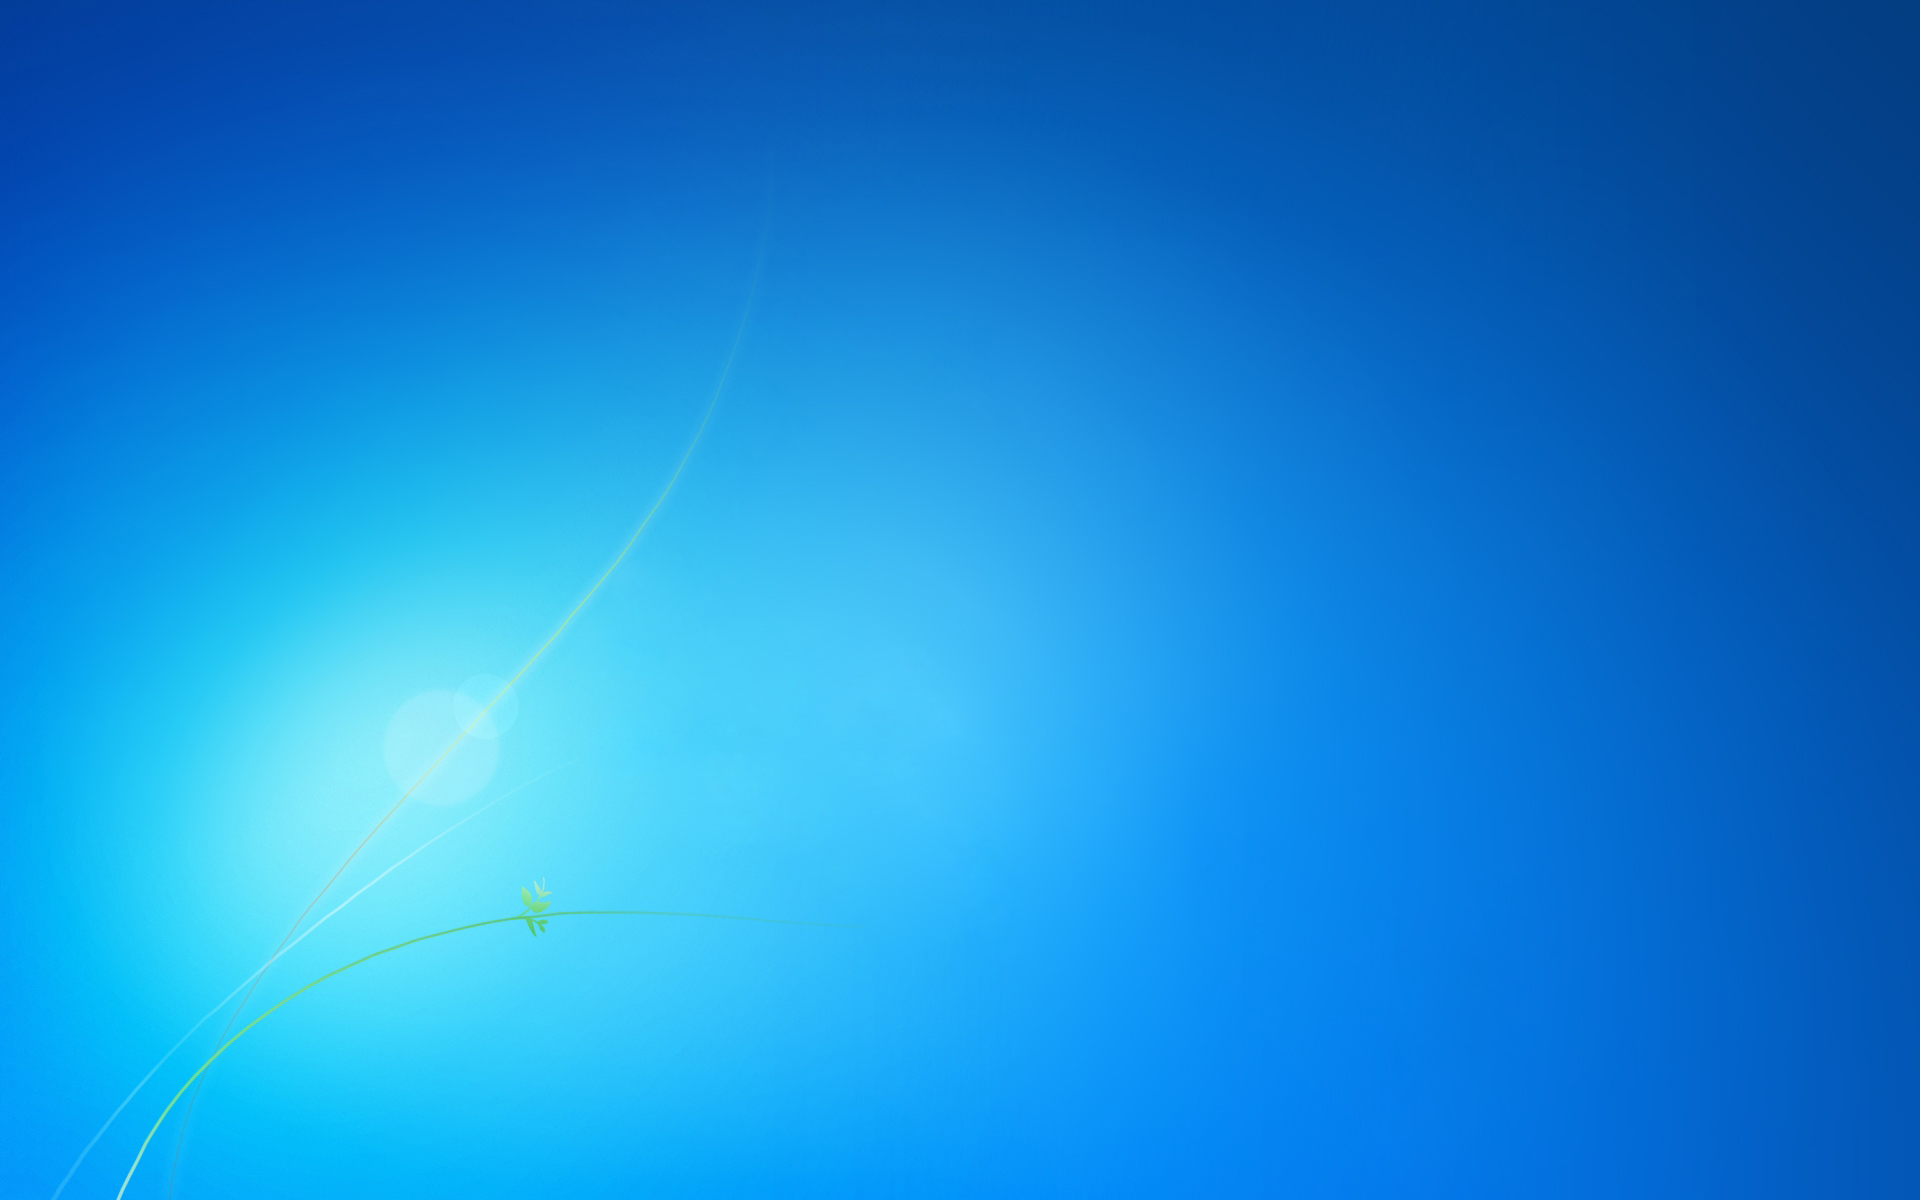 Hình nền xanh Windows 7 sẽ mang đến cho bạn cảm giác thư thái và yên bình. Quan tâm đến hình ảnh liên quan để cập nhật cho mình những hình nền xanh mới nhất đầy sắc màu.